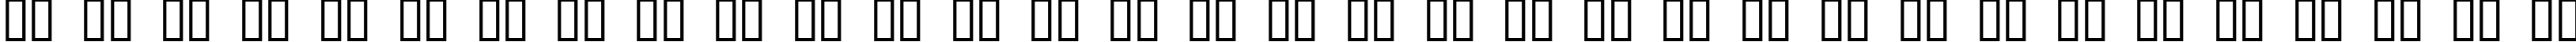 Пример написания русского алфавита шрифтом Bjork